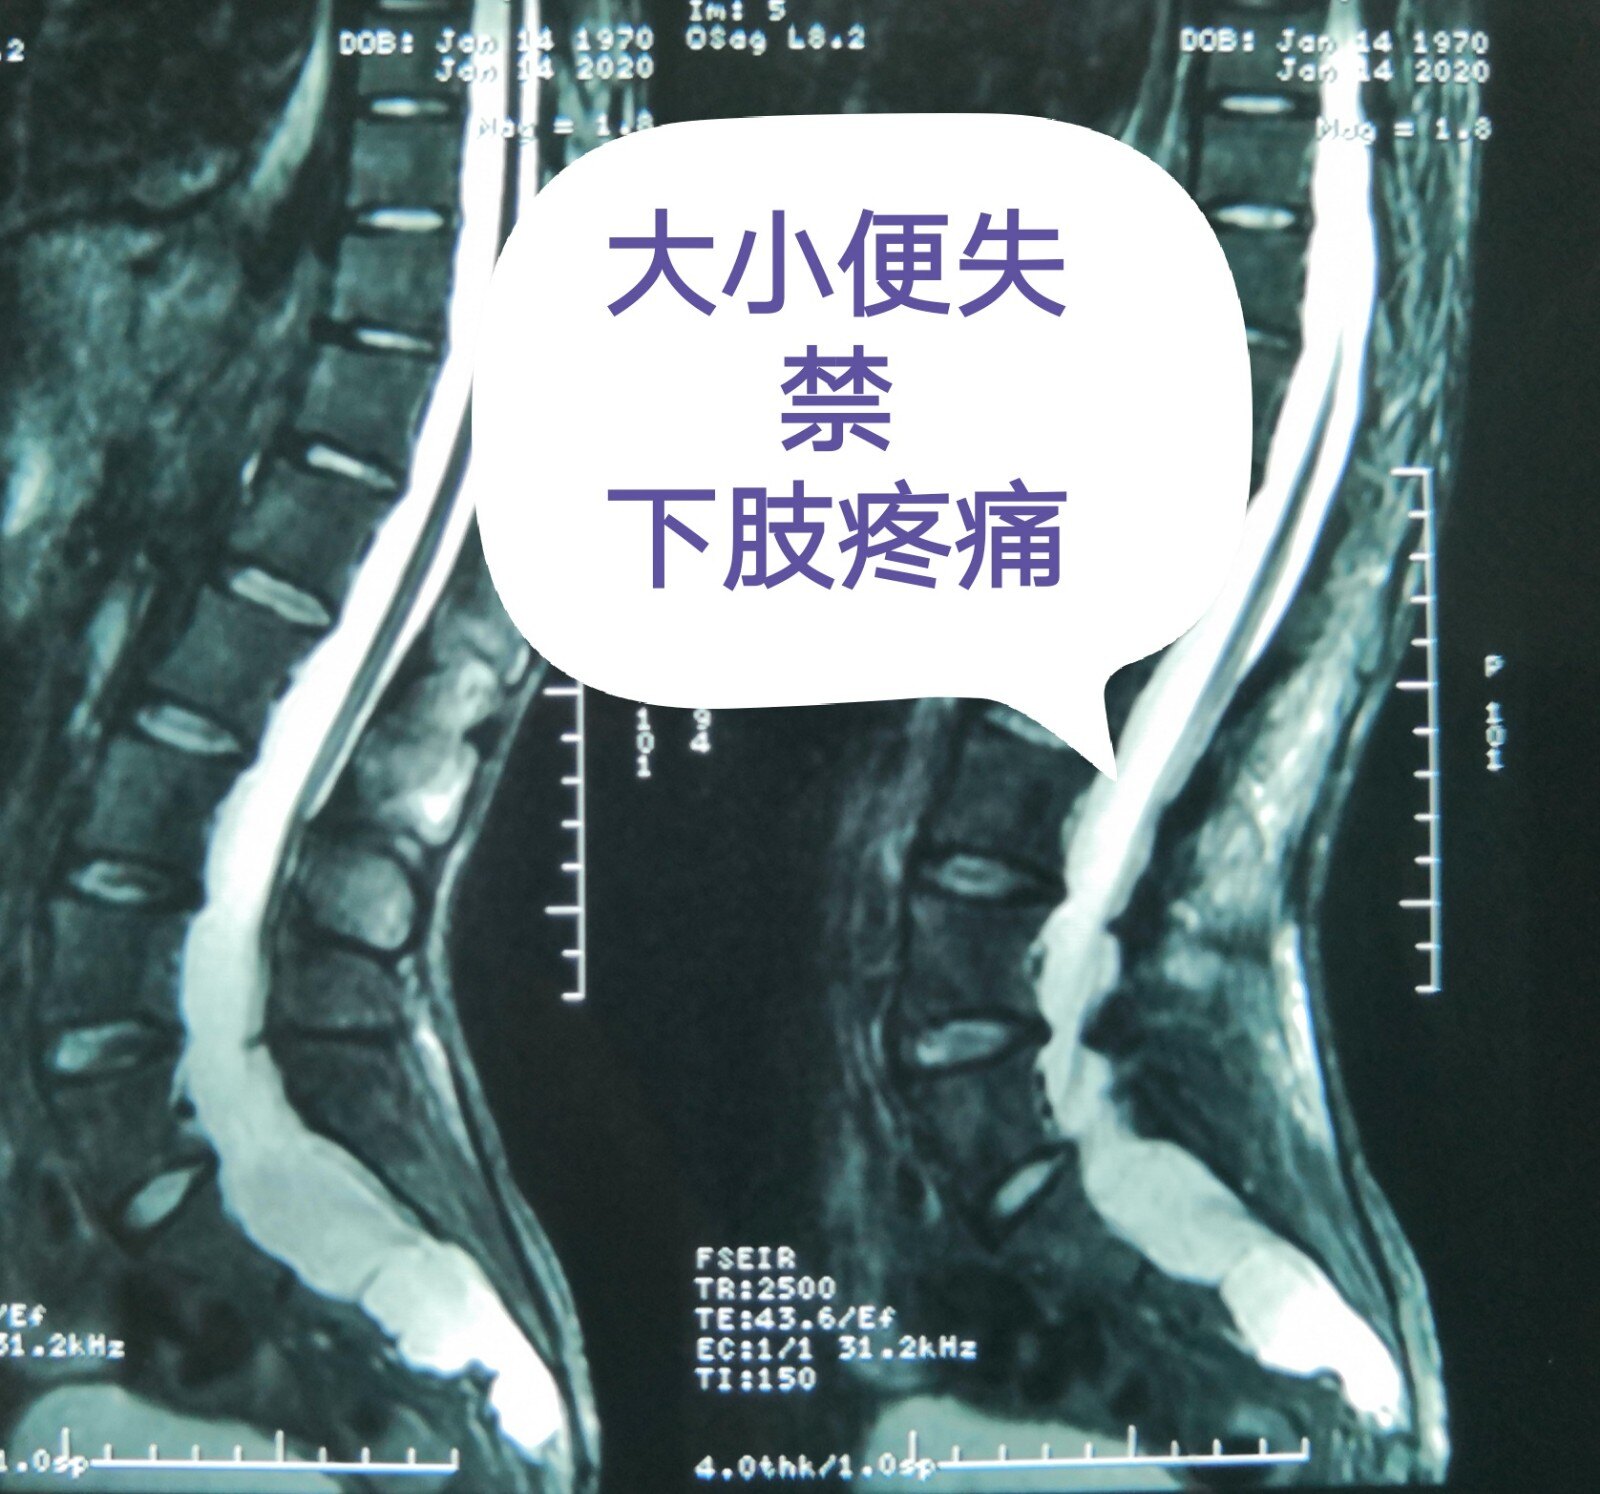 图1-2-2 椎间盘、前纵韧带和椎骨间的连结-新编人体解剖学-医学